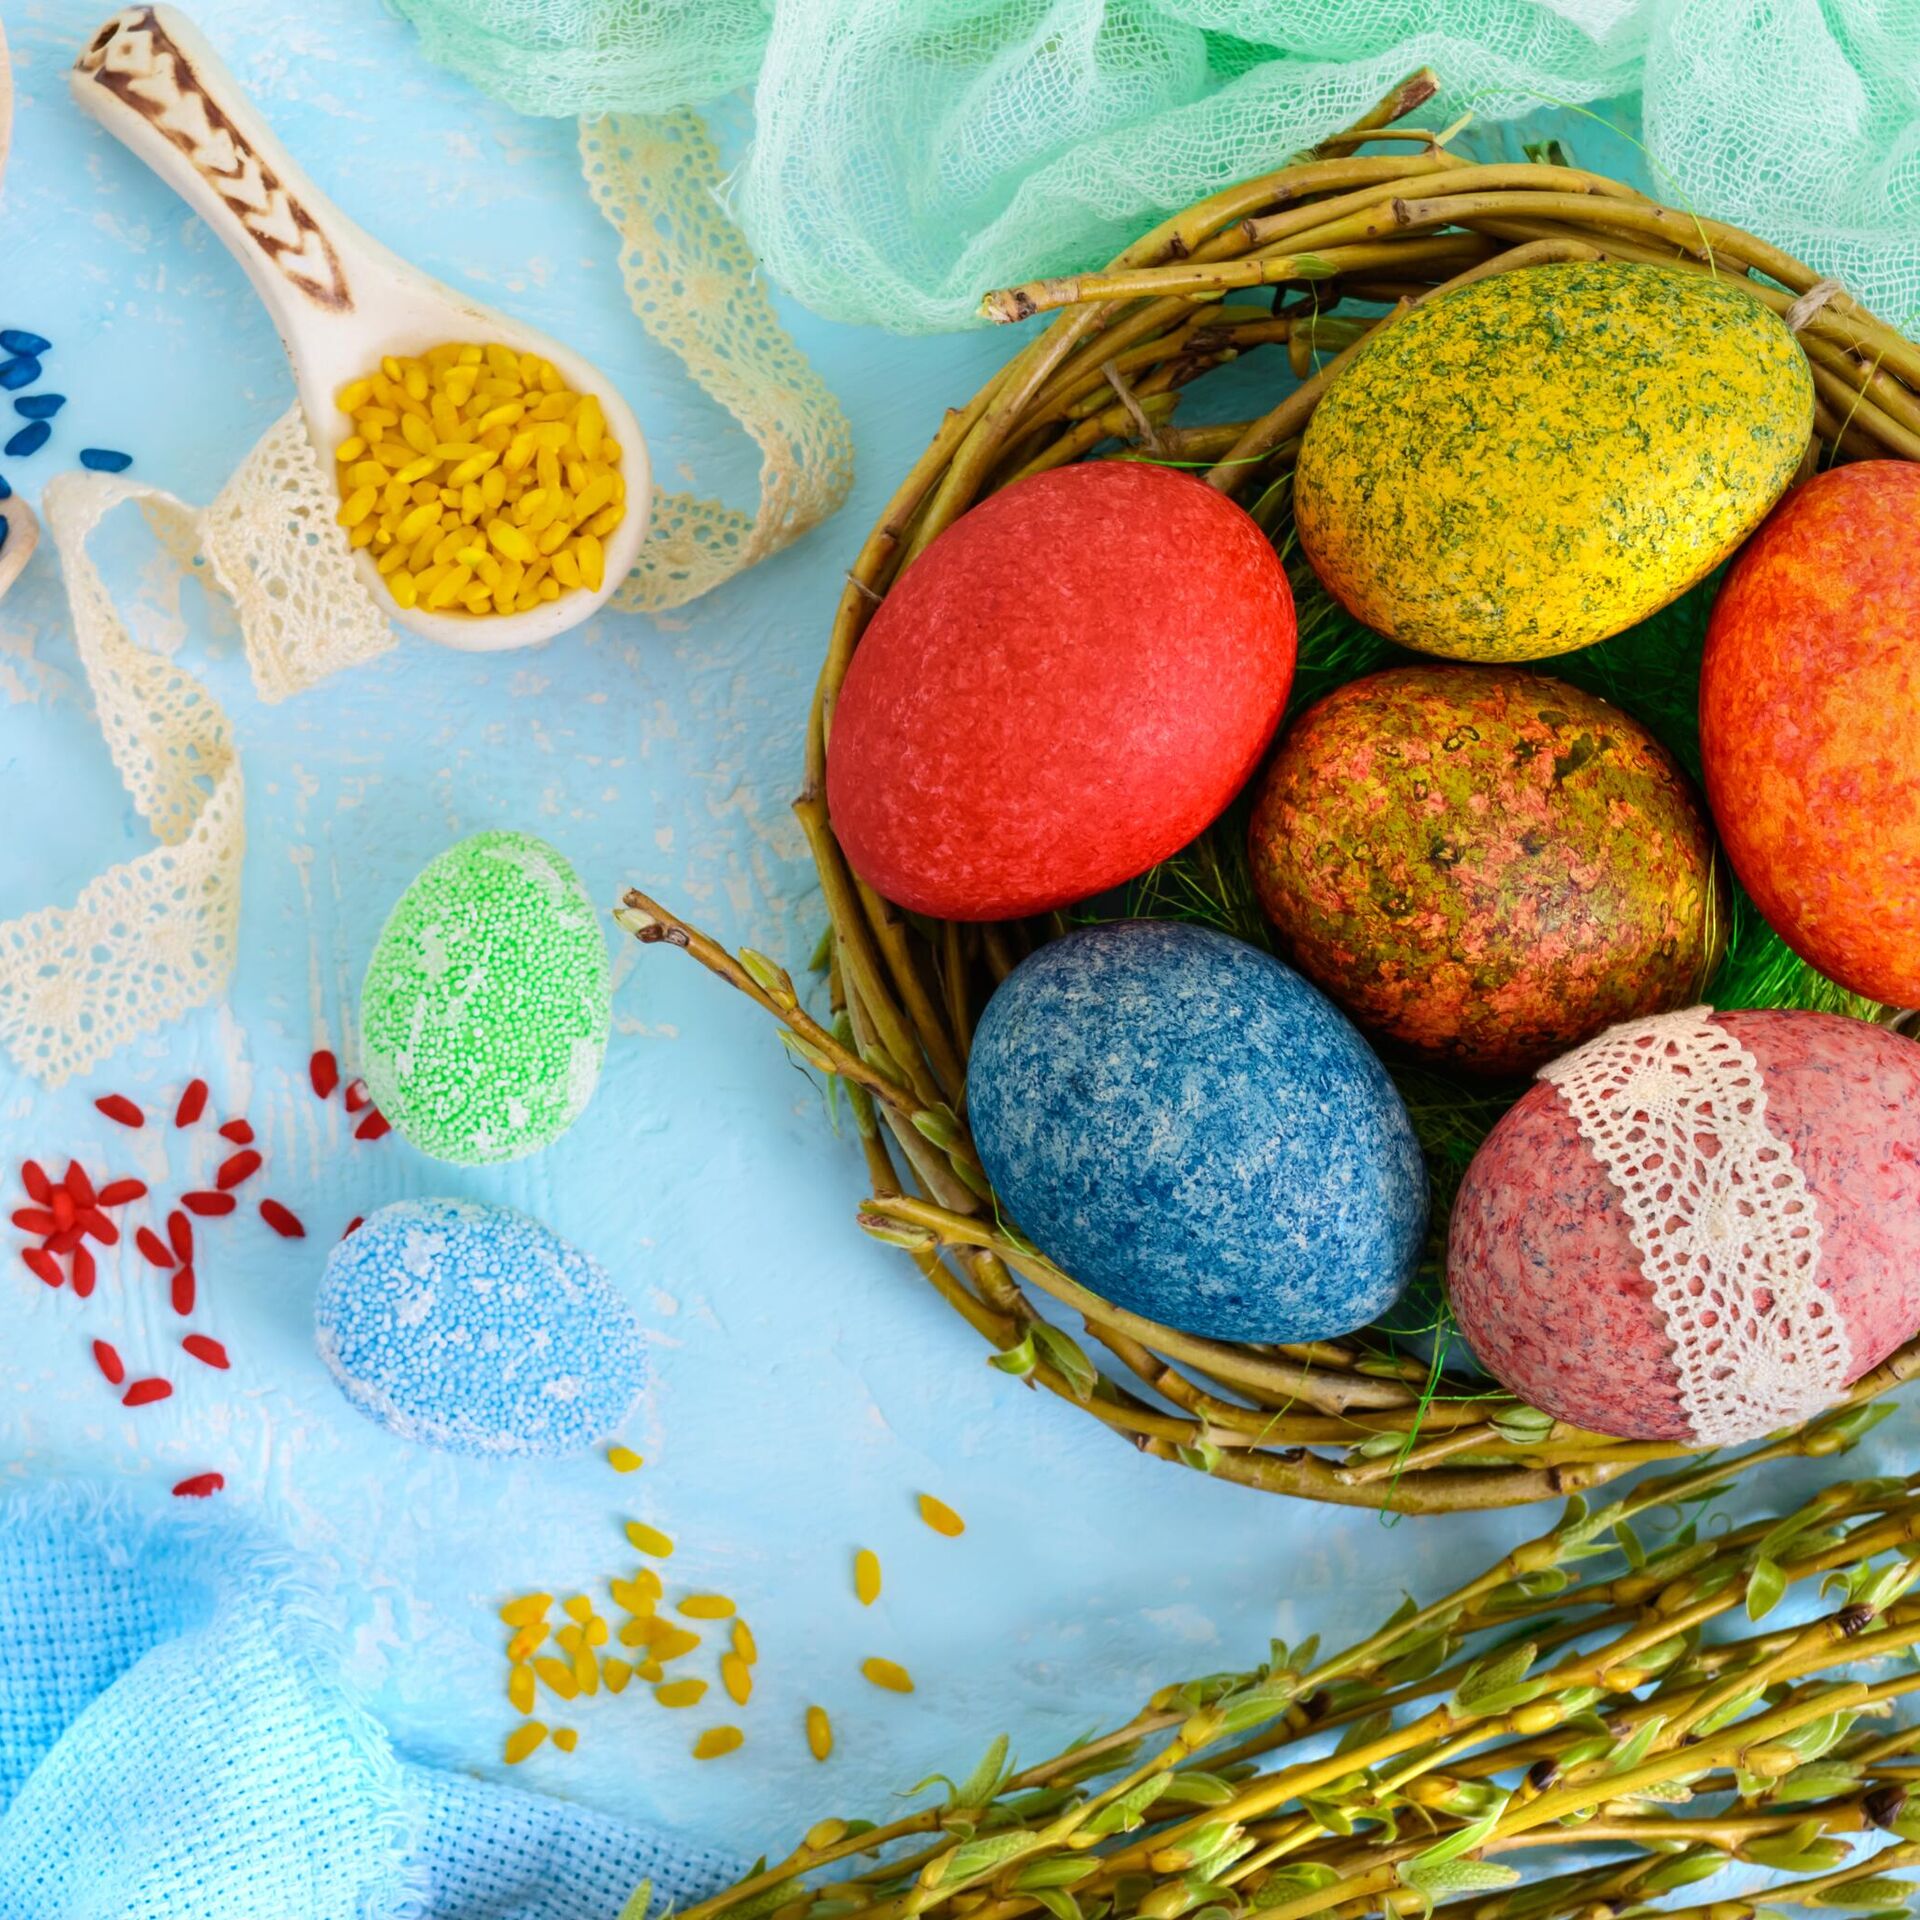 Как красиво покрасить яйца на Пасху: лучшие идеи и советы, чем покрасить яйца в домашних условиях